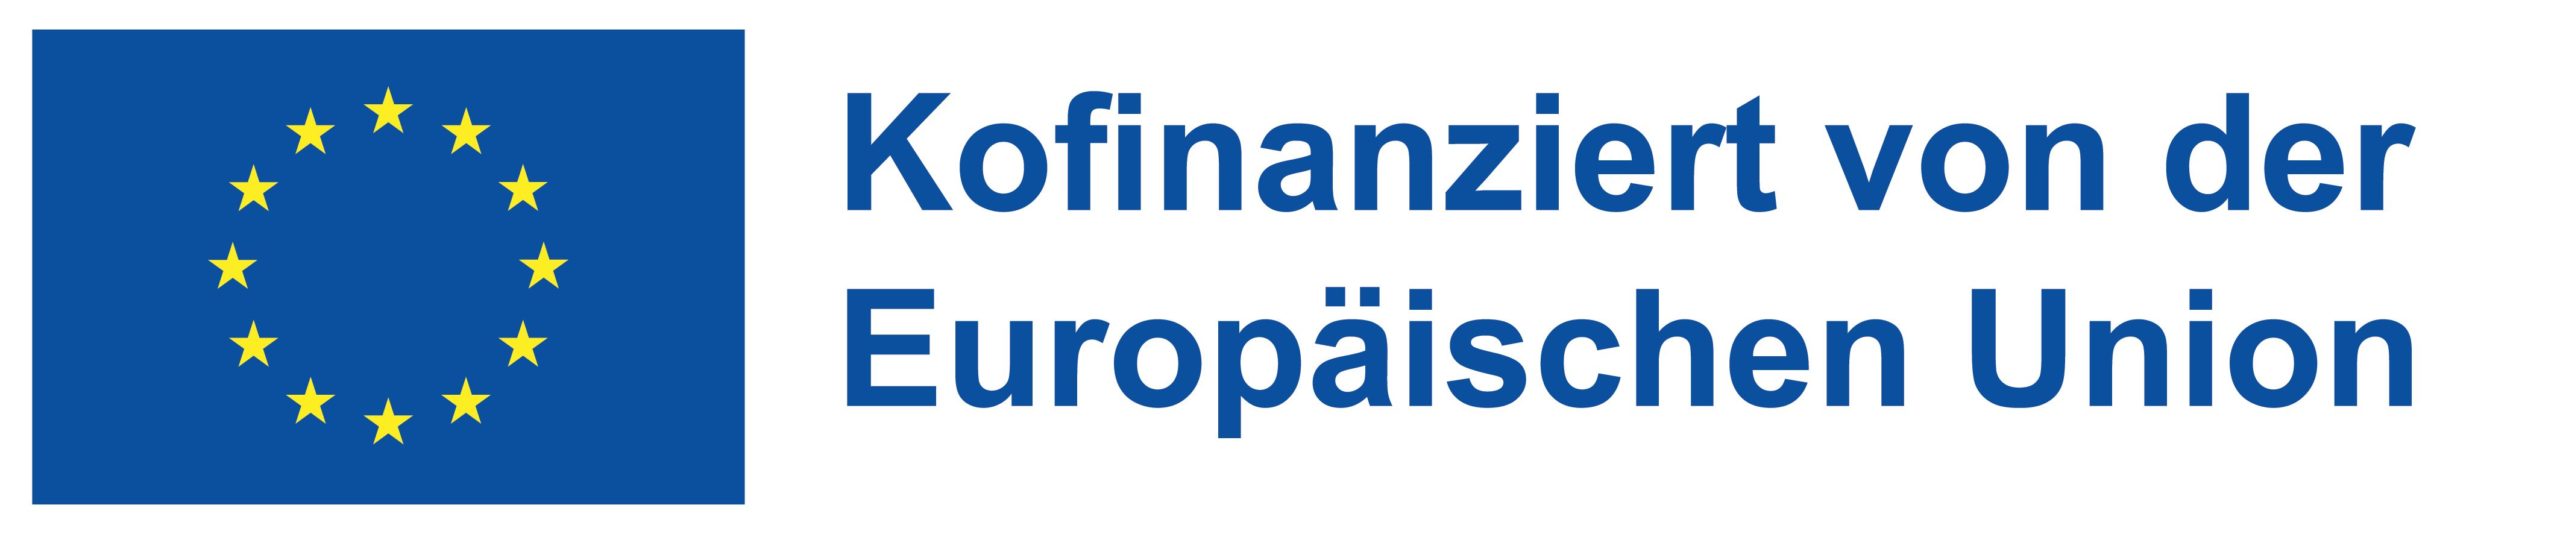 Logo Förderung Kofinanziert von der Europäischen Union_POS